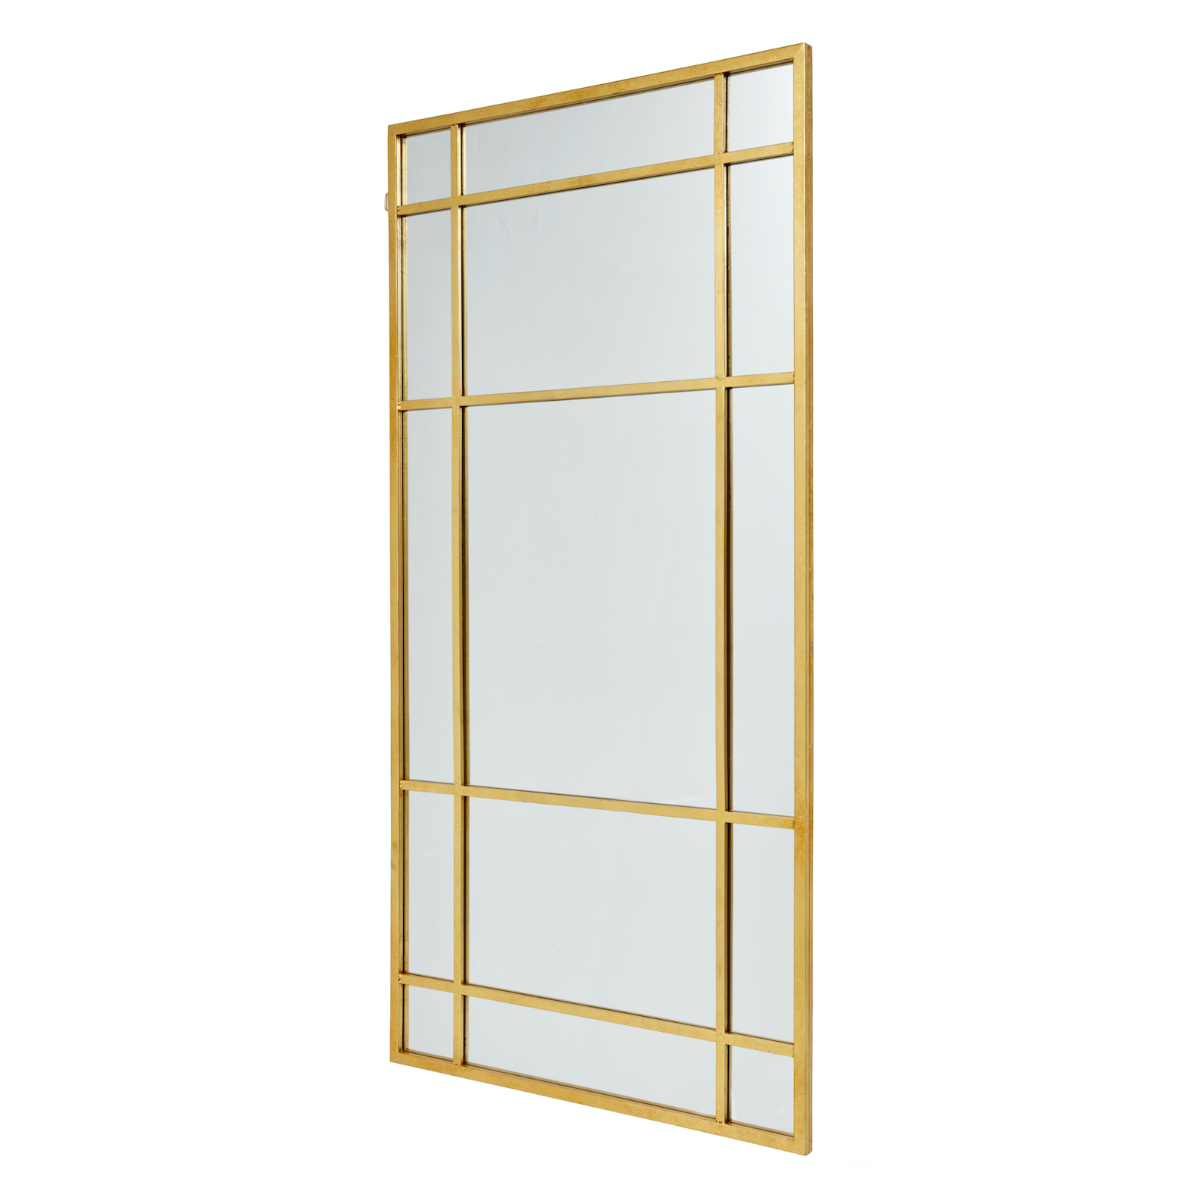 Spires spegel med järnram - 204x102 cm - Guldfärg